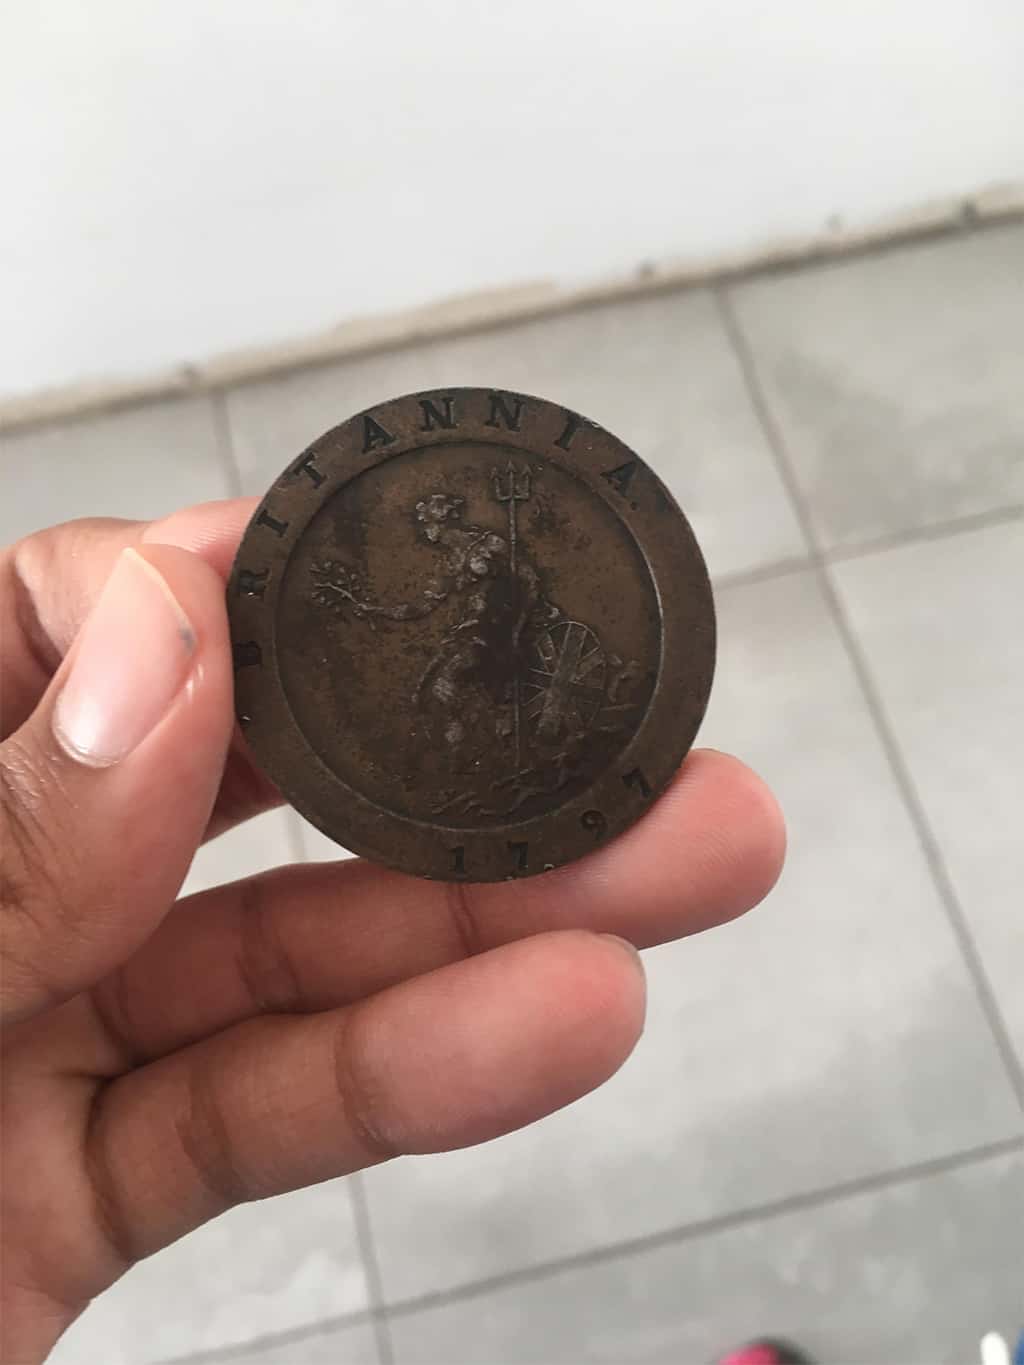 36. عثرت على هذه العملة في مجموعة جدتي للأشياء القديمة وتبين لاحقاً أنها تعود لعام 1797